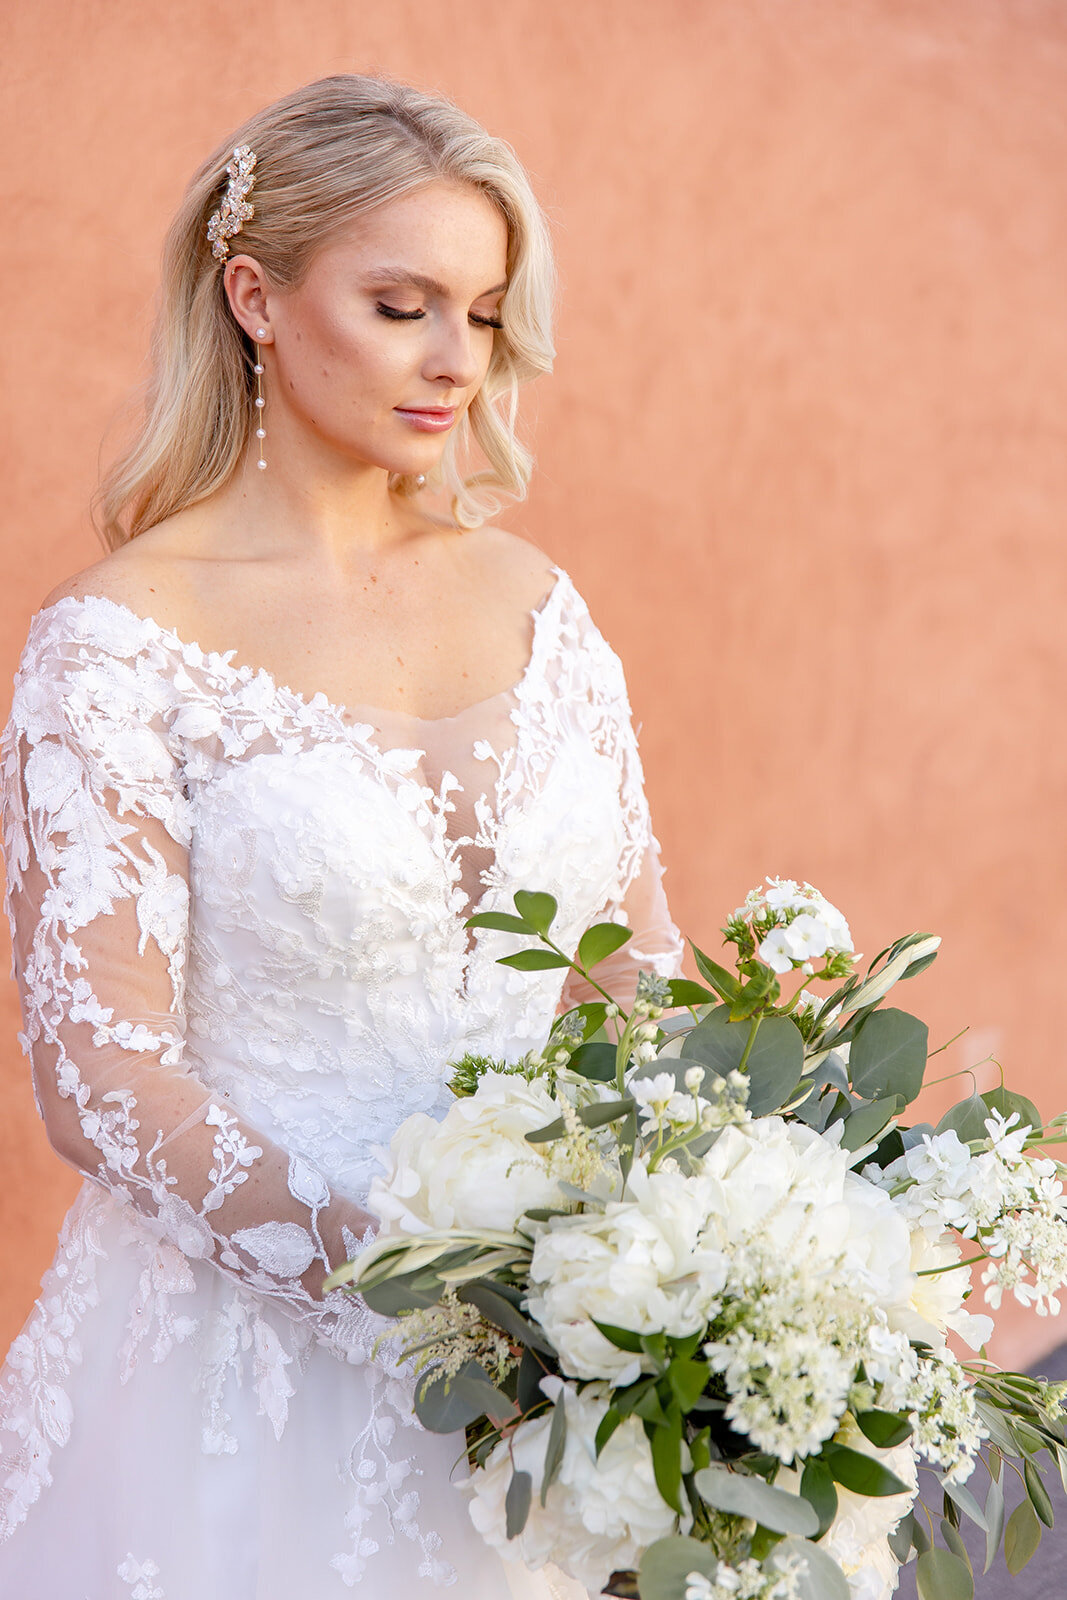 bride looking down at her wedding flowers